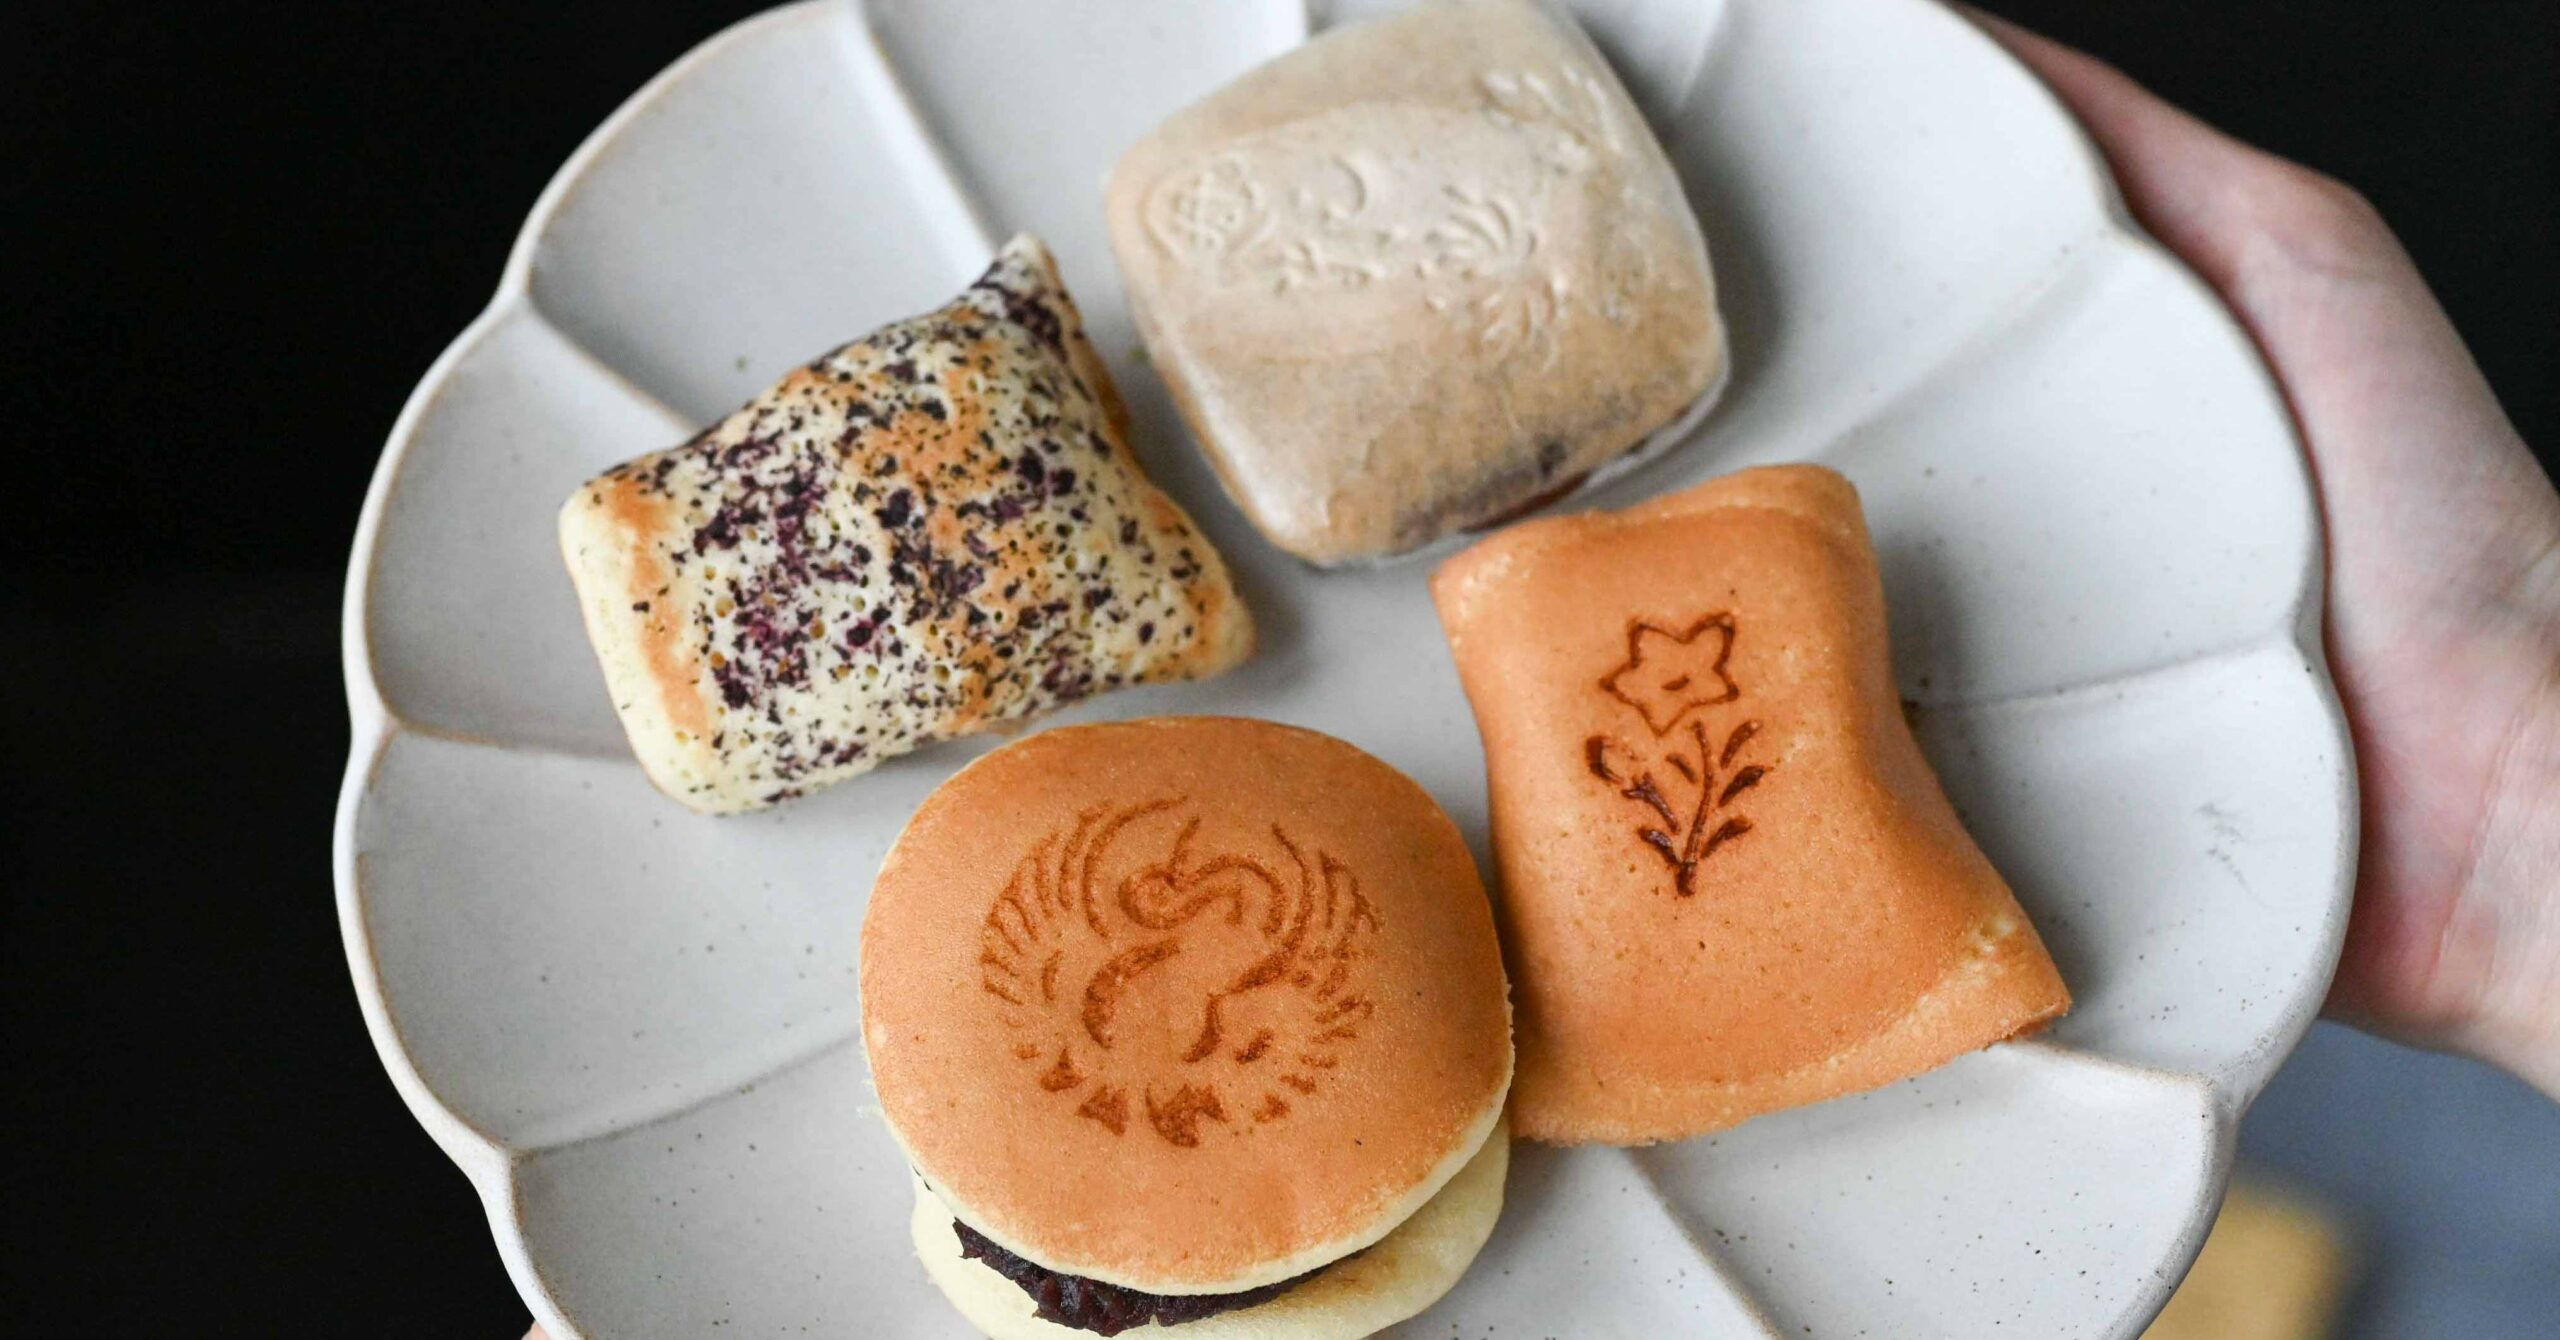 彌月蛋糕,明月堂和菓子,彌月蛋糕推薦,三重伴手禮,台北橋站美食 @Nash，神之領域